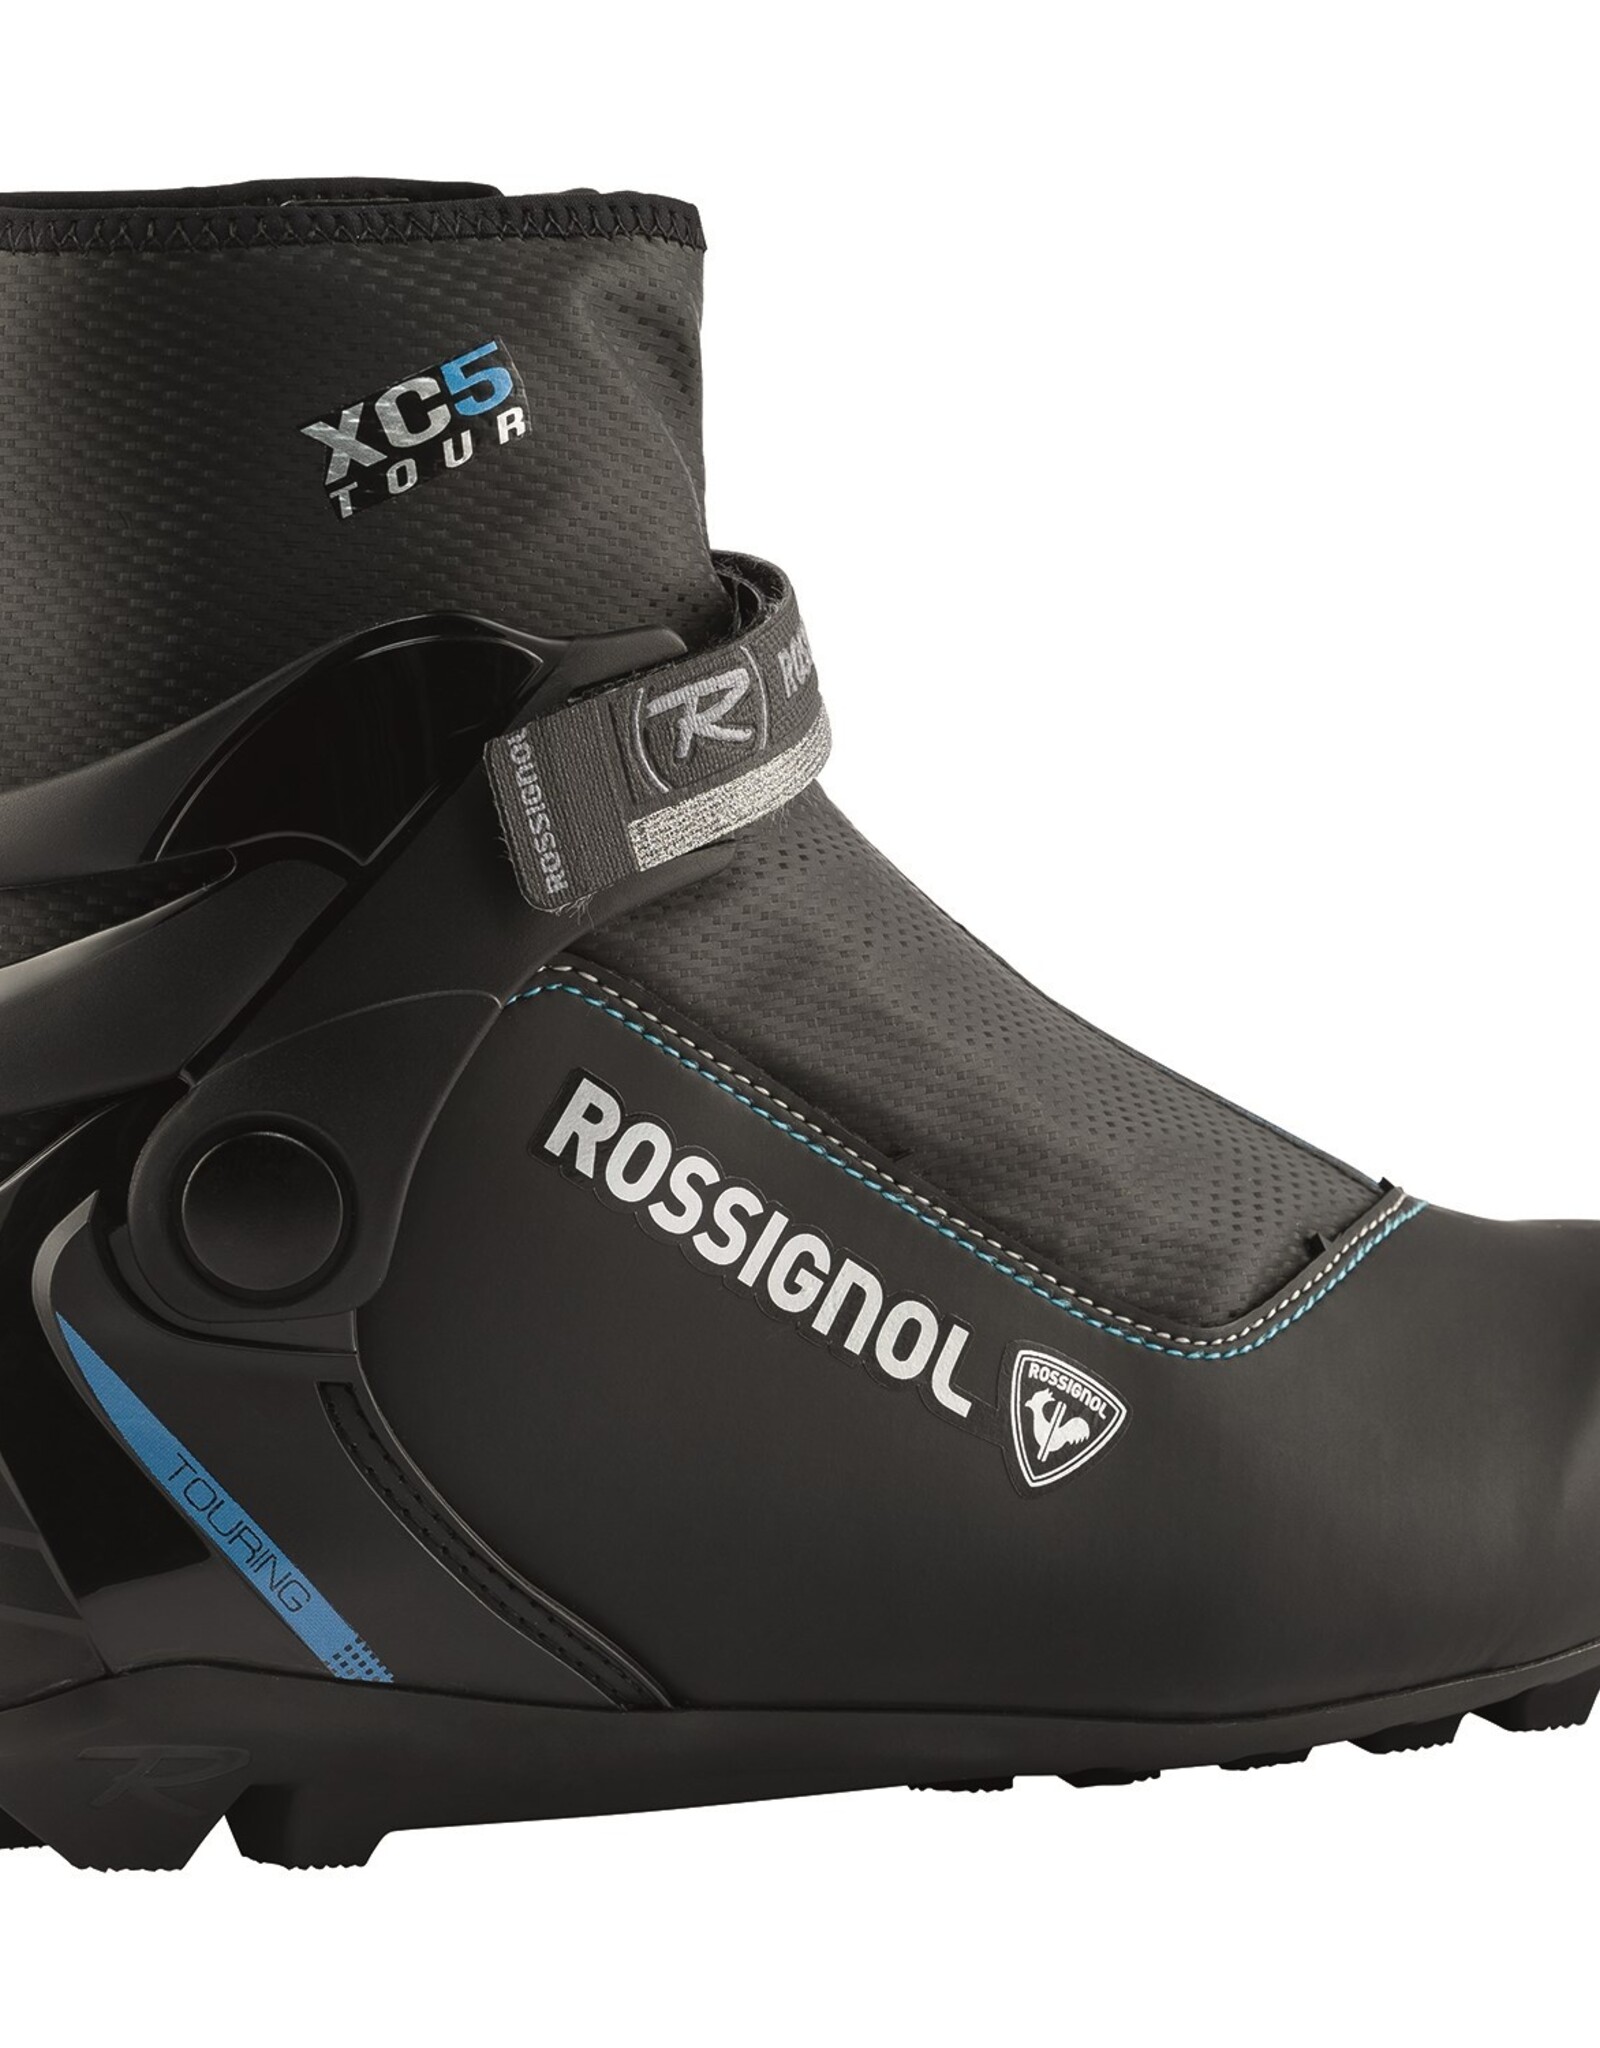 ROSSIGNOL Rossignol XC-5 Women classic boot